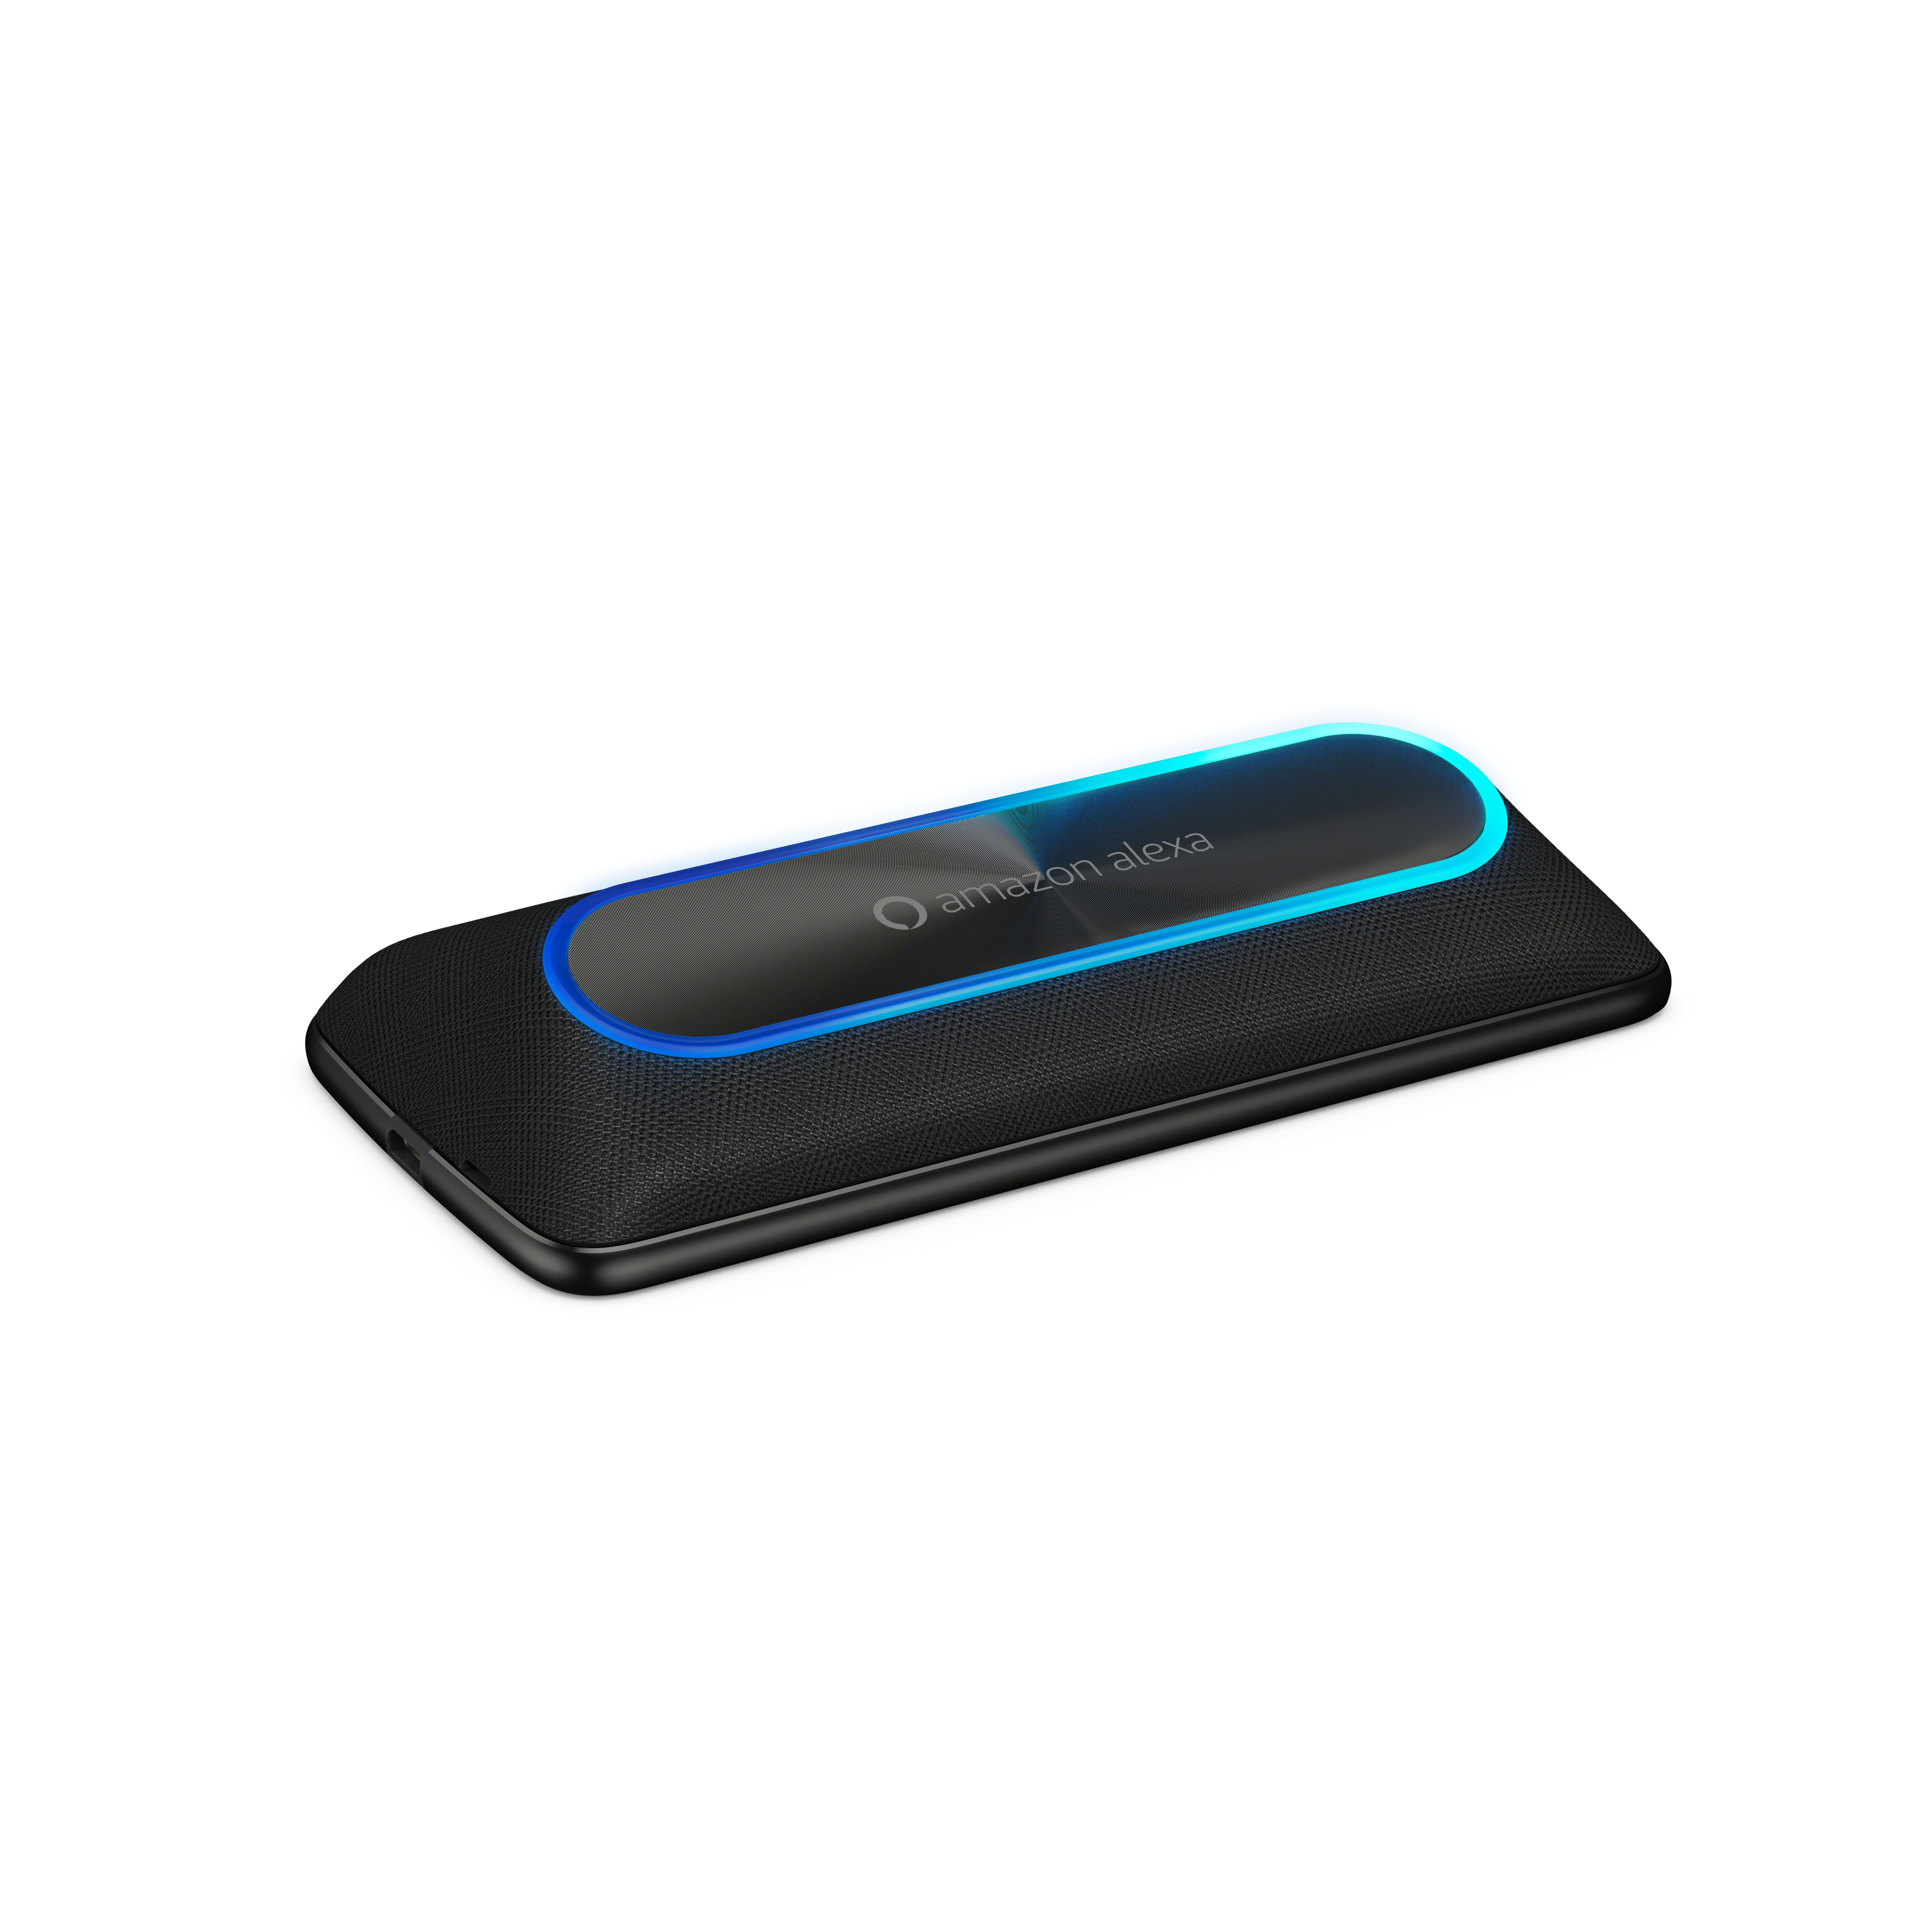 O Moto Smart Speaker com Amazon Alexa, voltado para baixo com a luz indicadora acesa